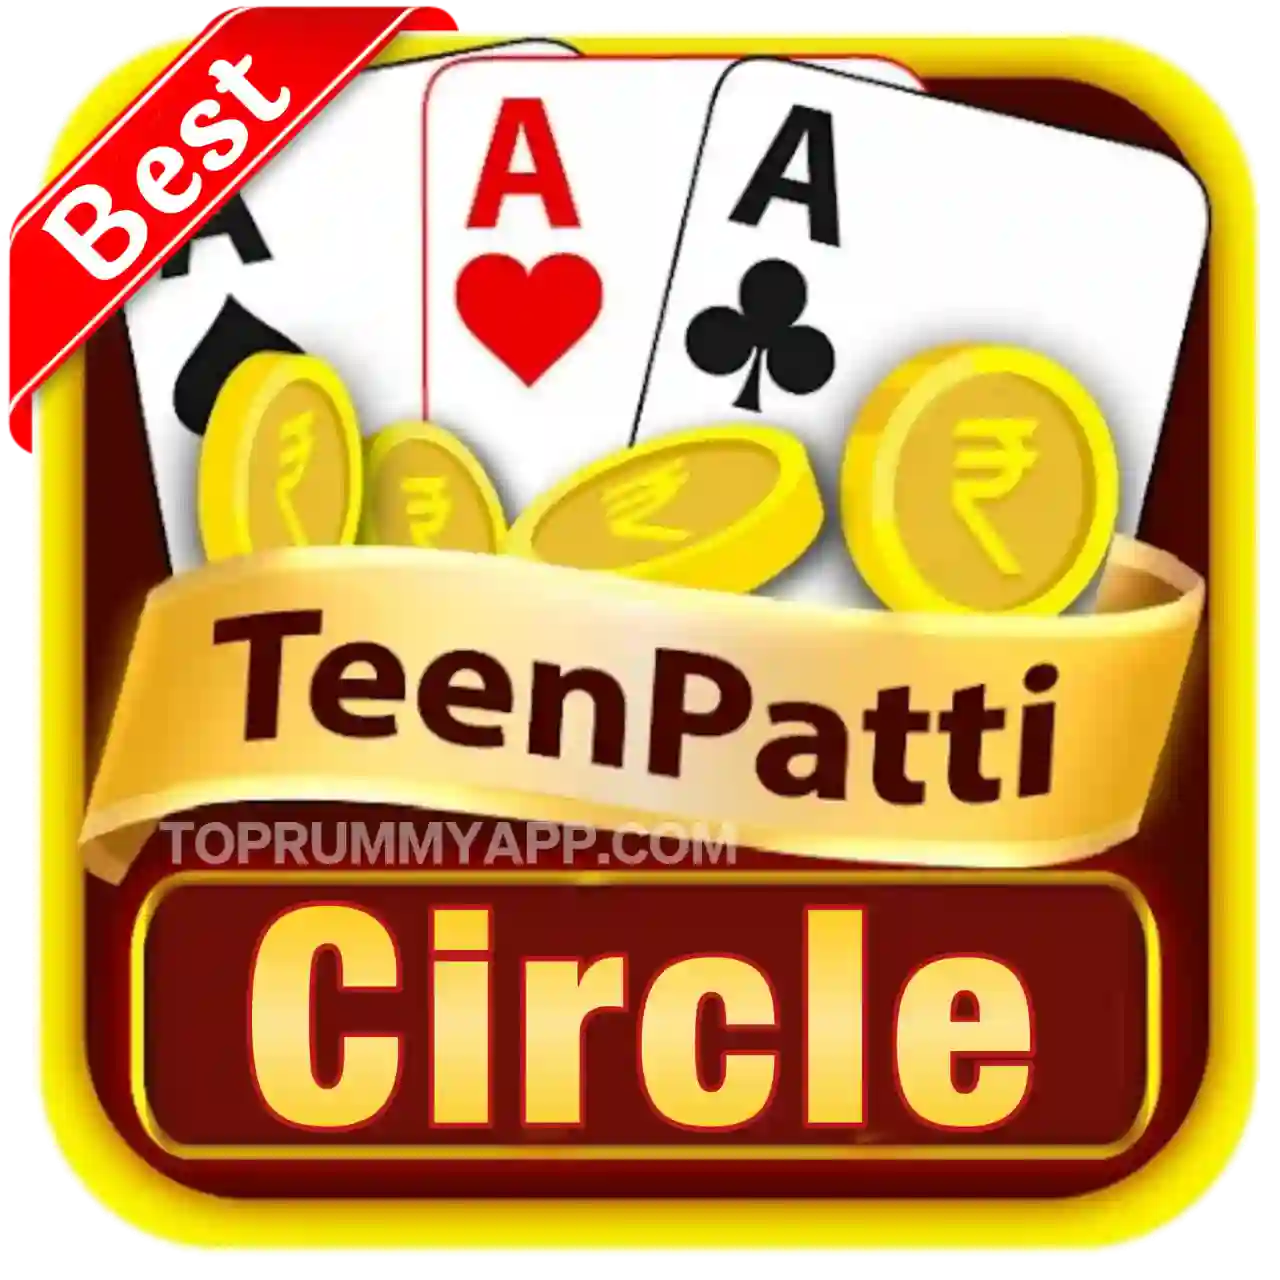 Teen Patti Circle Apk Download All Teen Patti App List